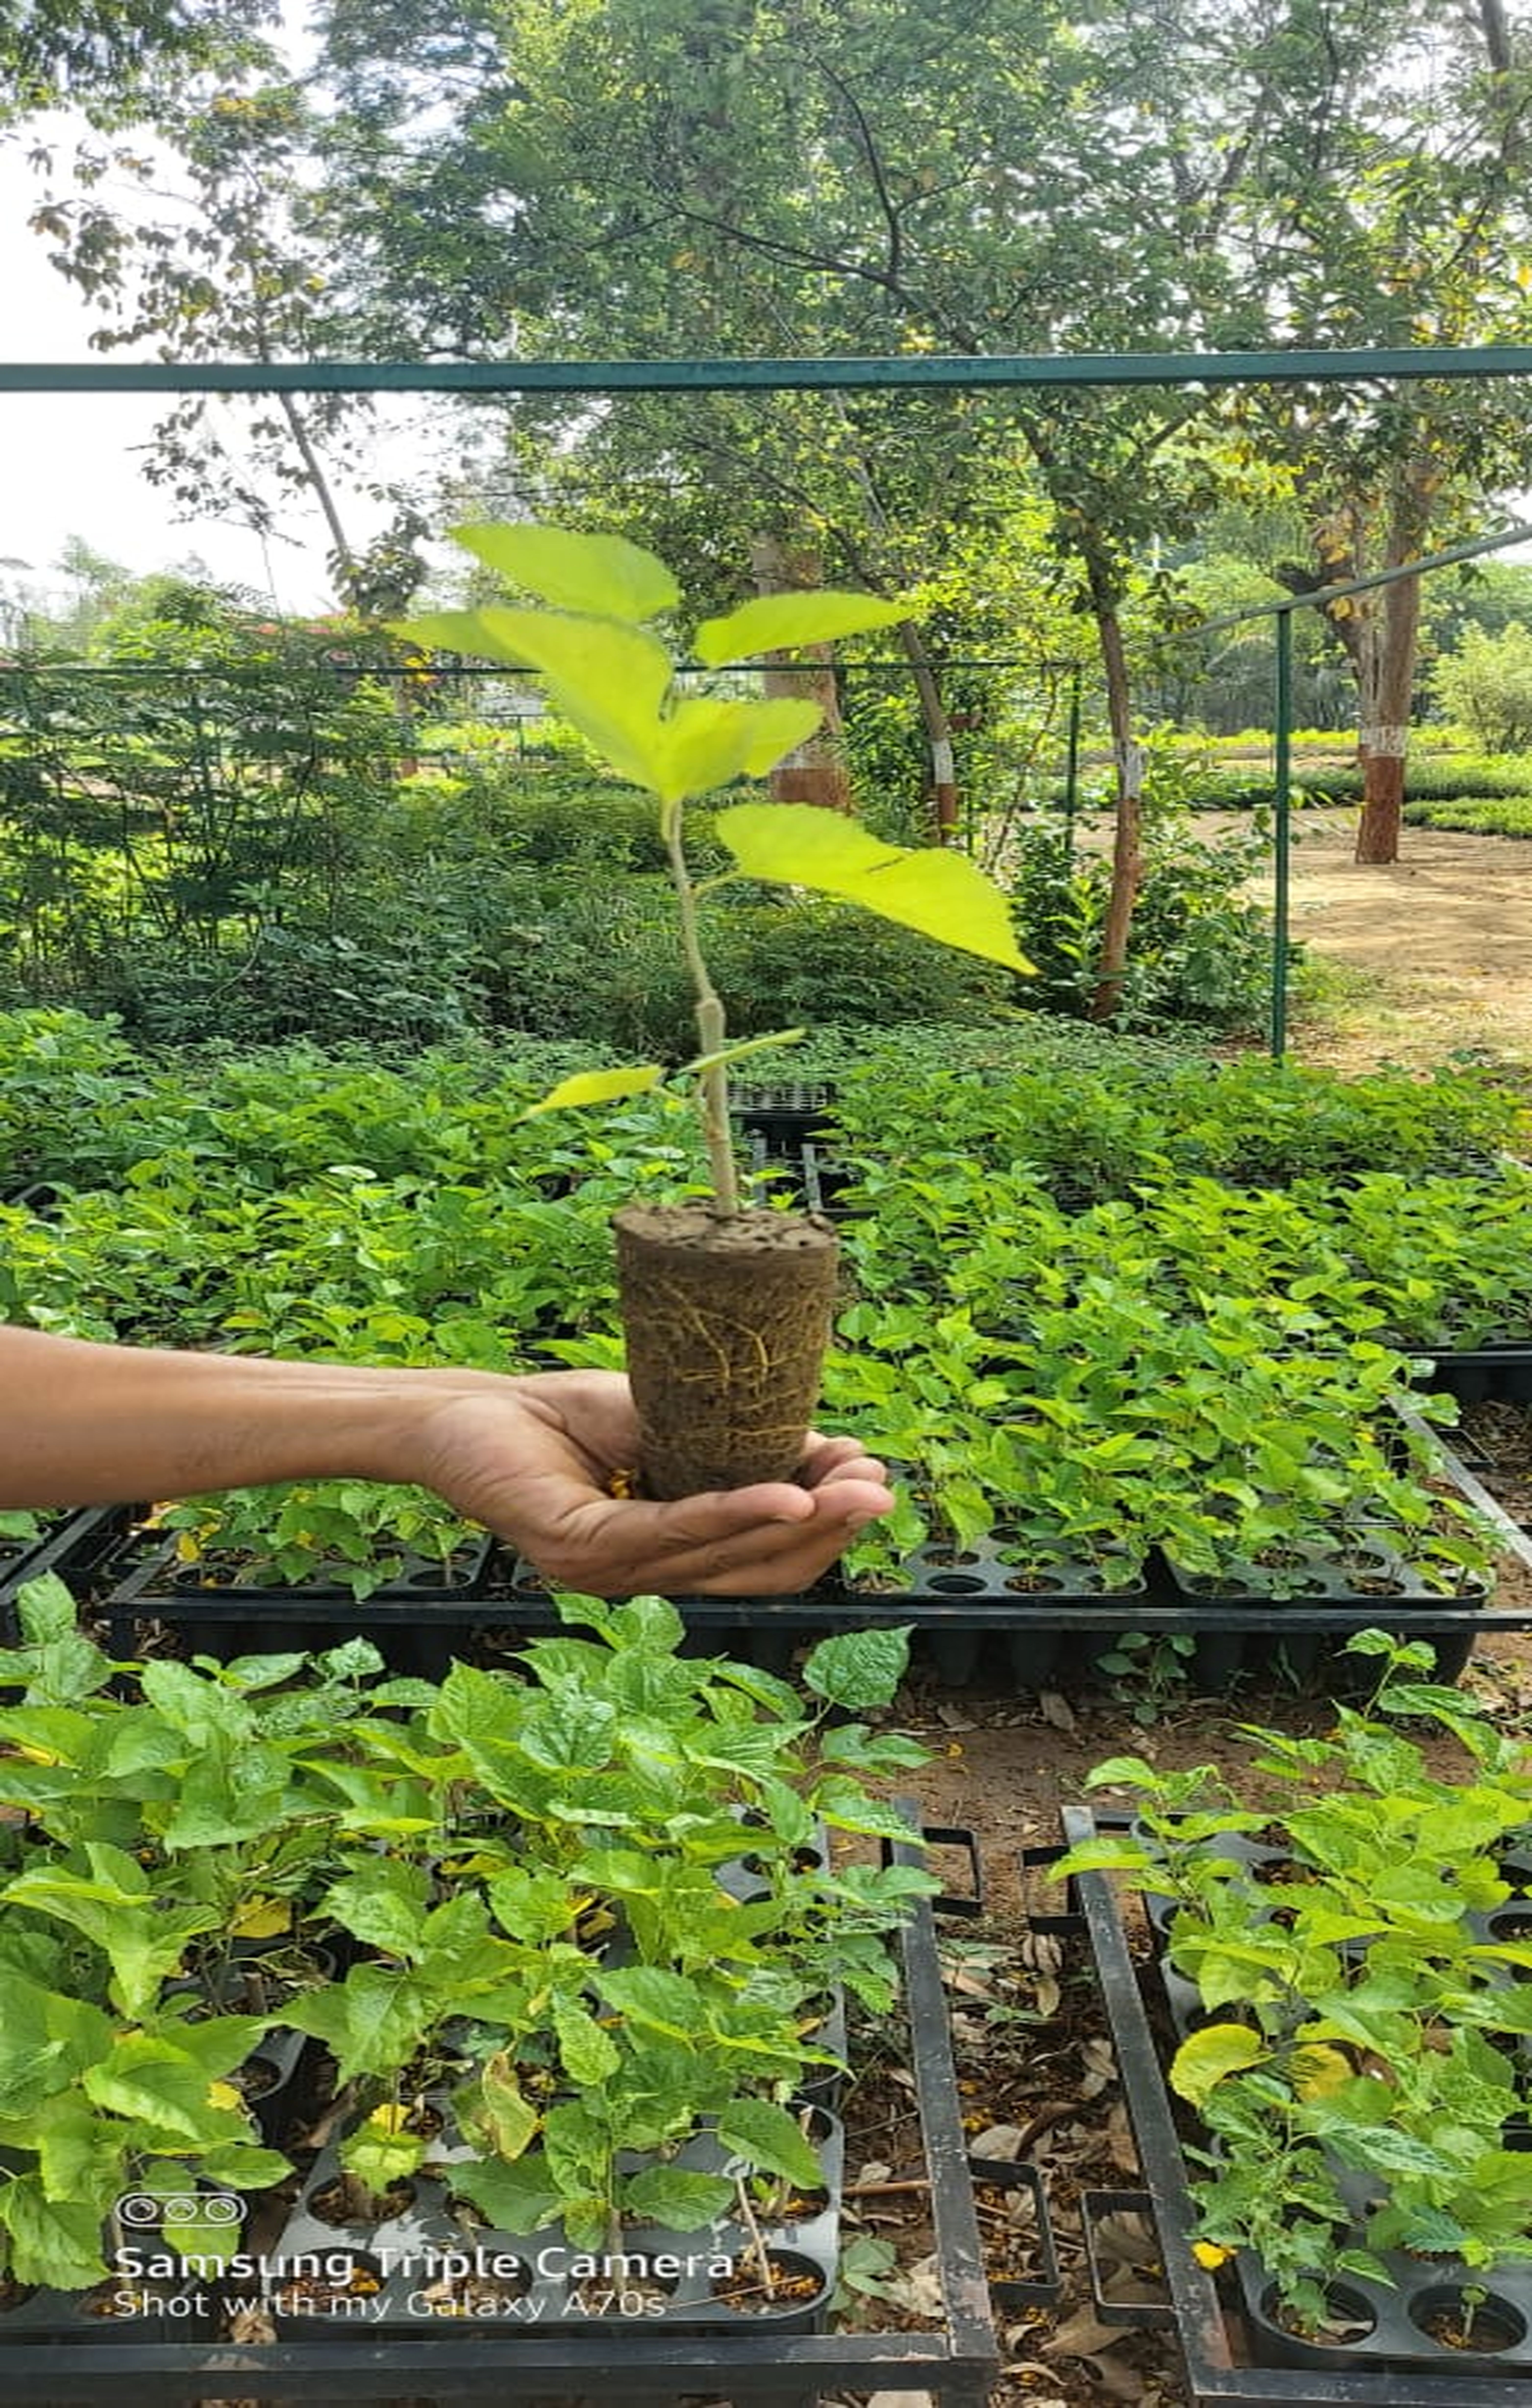 तुलसी वन बनाने के लिए 1 लाख पौधों का नि:शुल्क वितरण आज से